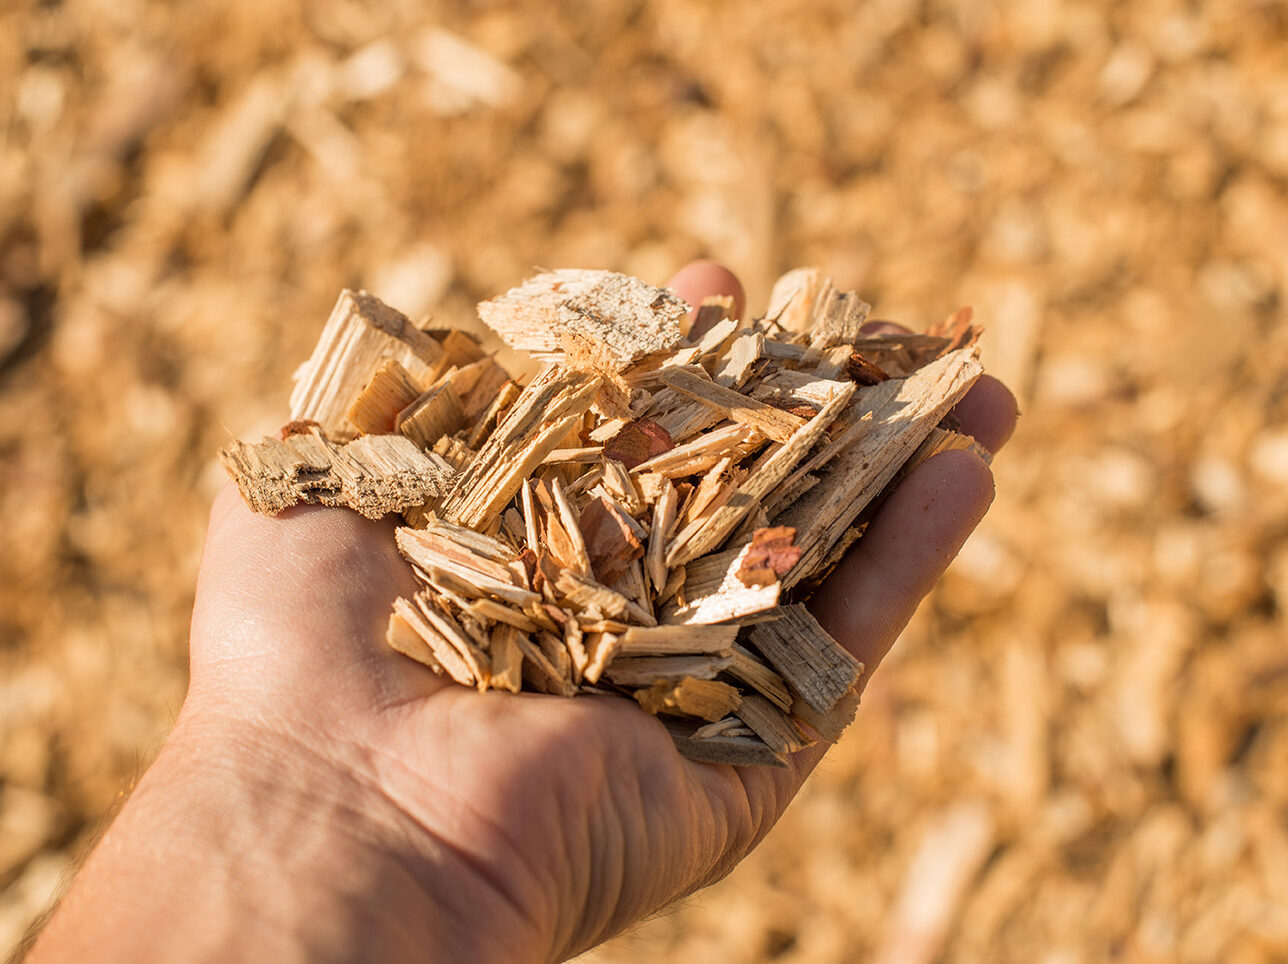 Shropshire-Biomass-Fuels-aspect-ratio-700-524